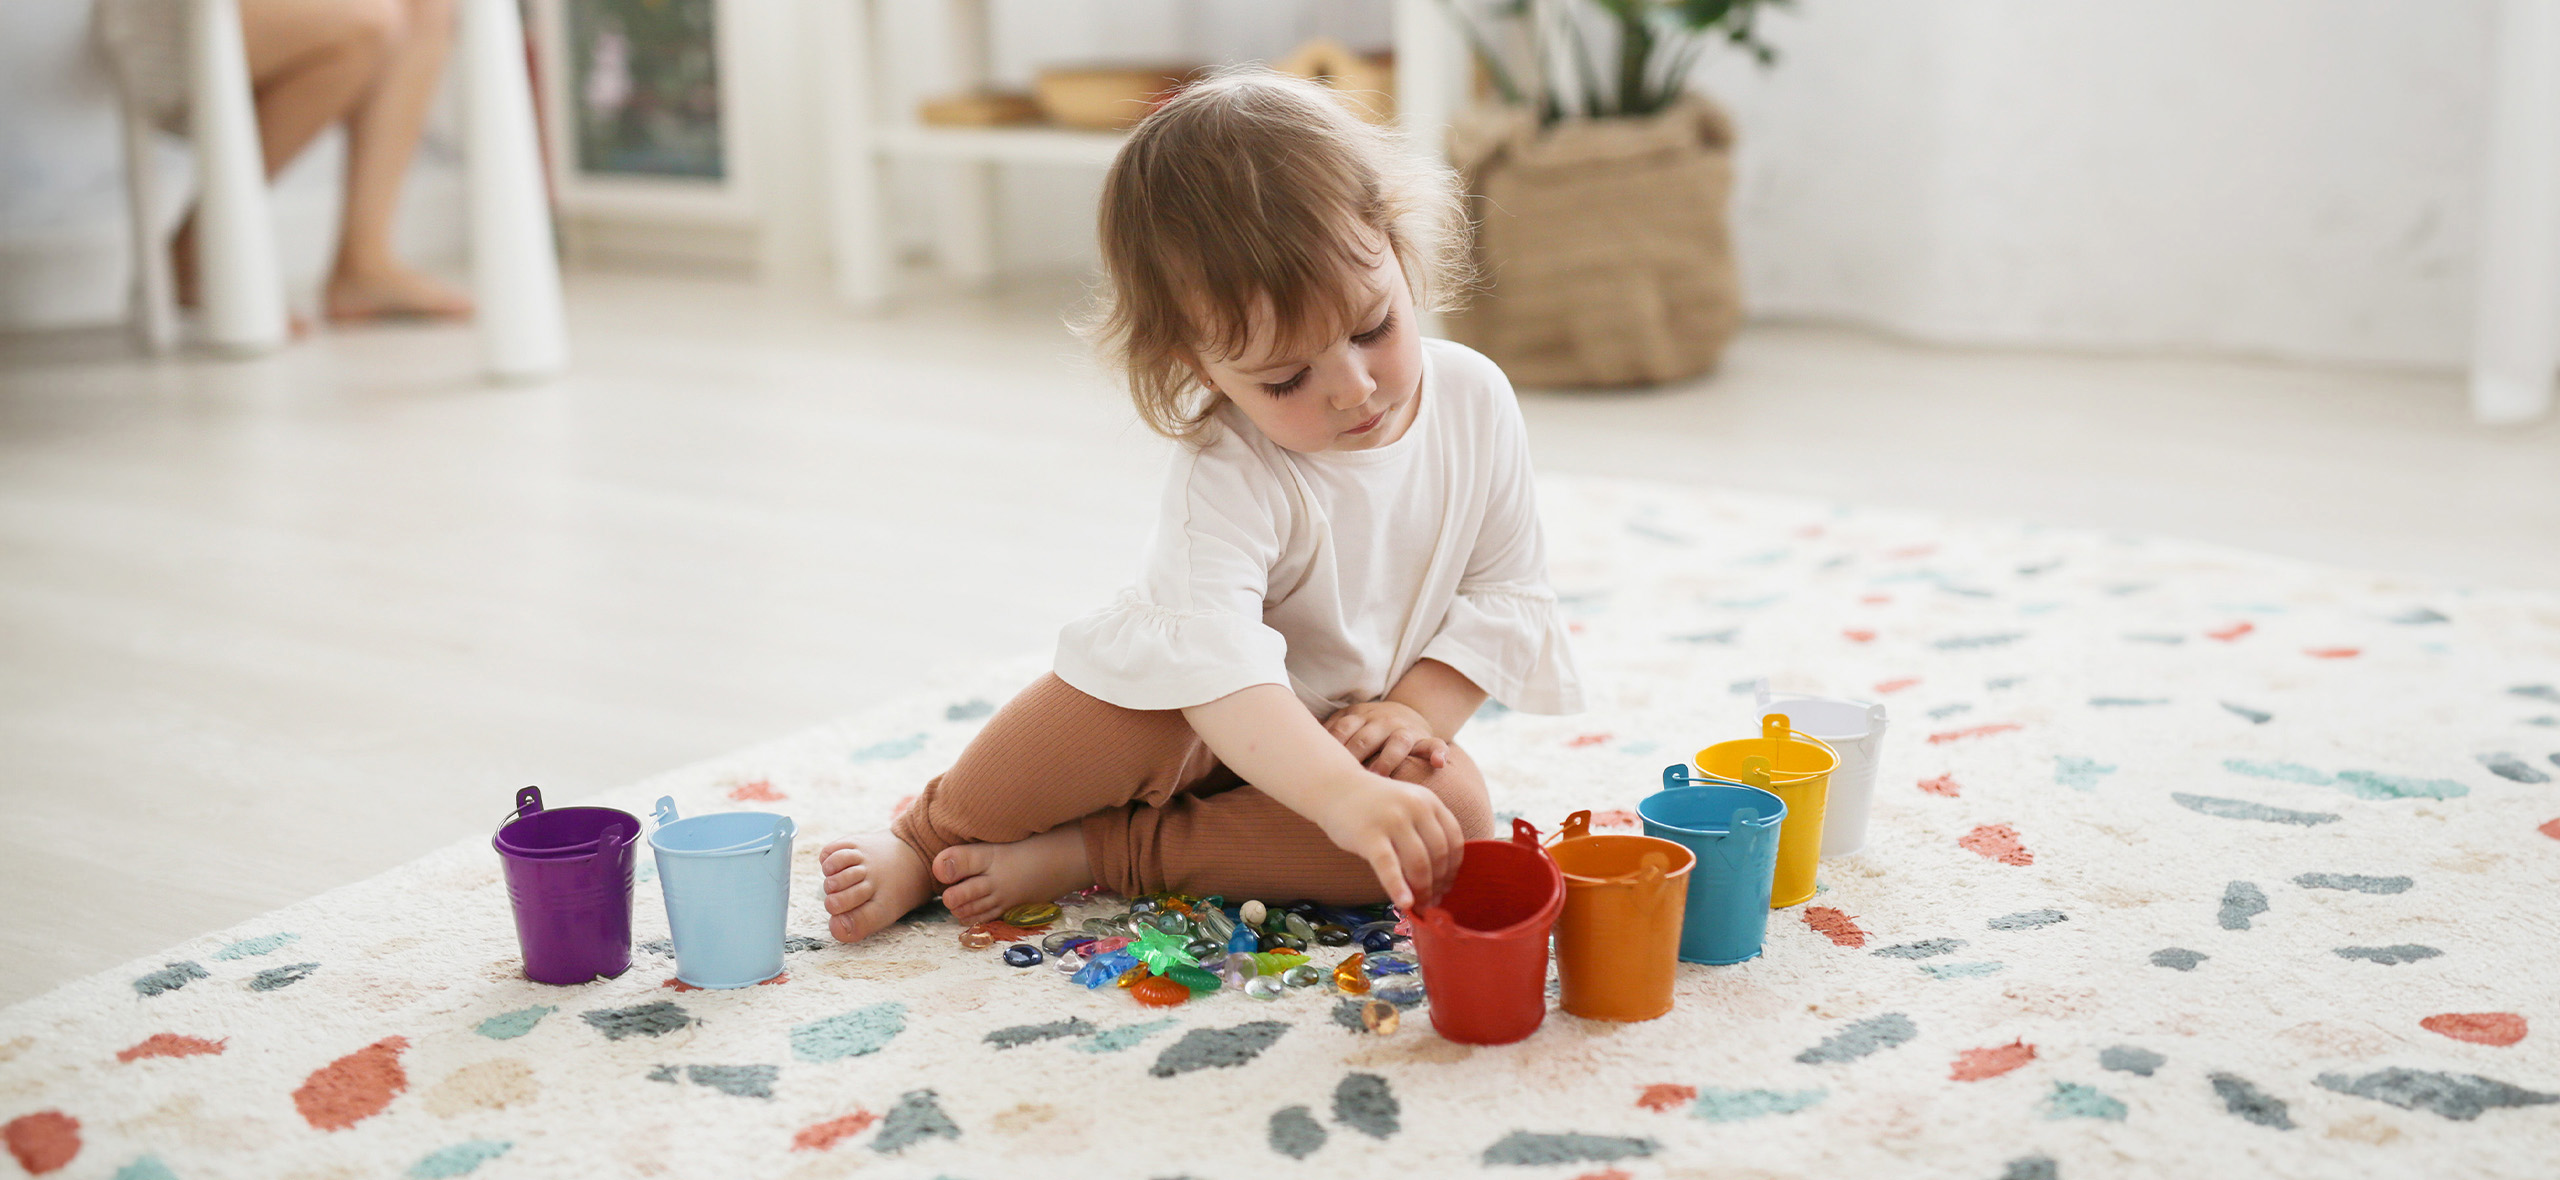 Рекомендации для развития речи ребенка в домашних условиях | Блог Kidskey